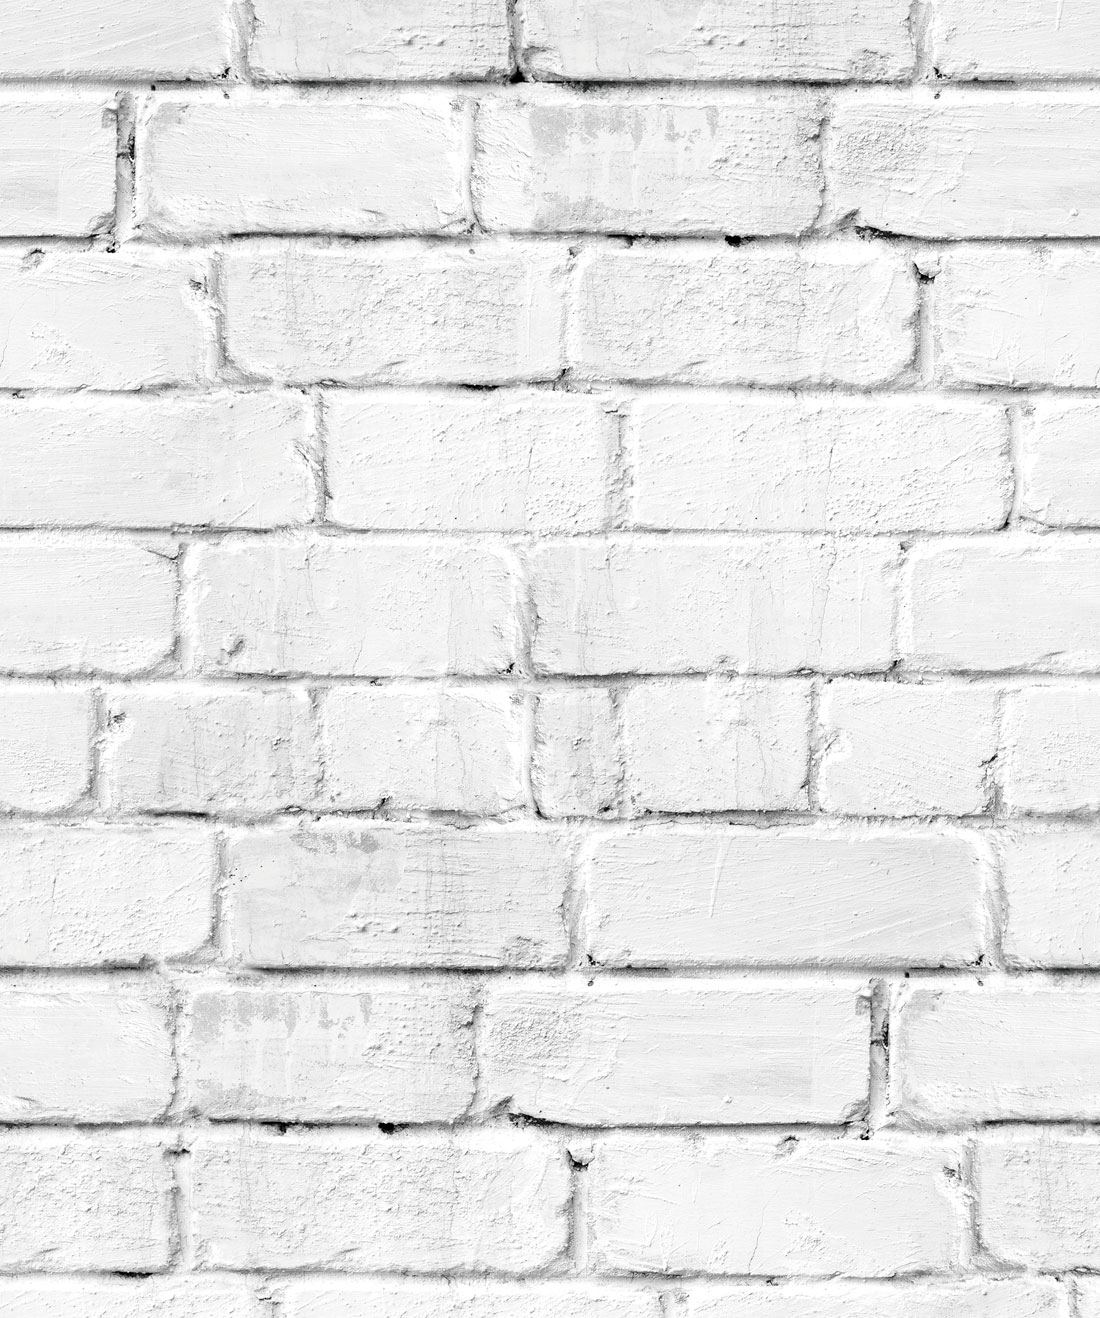 white brick wall wallpaper,brick,brickwork,wall,stone wall,bricklayer